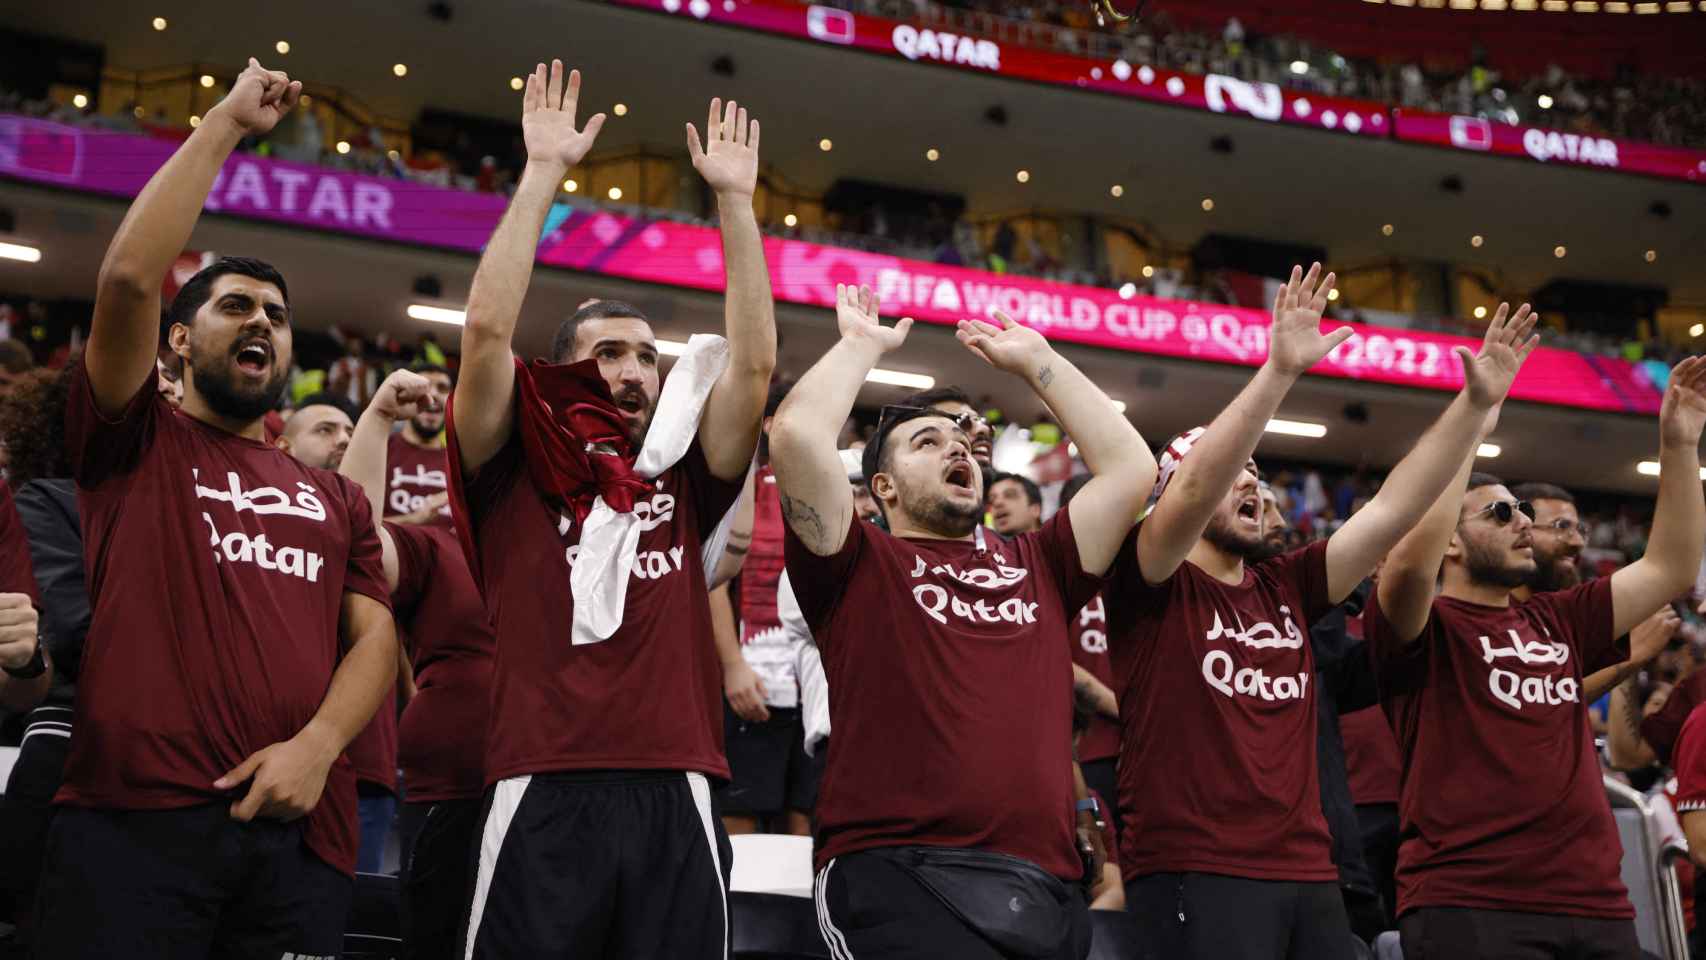 Las gradas repletas de aficionados animando a Qatar